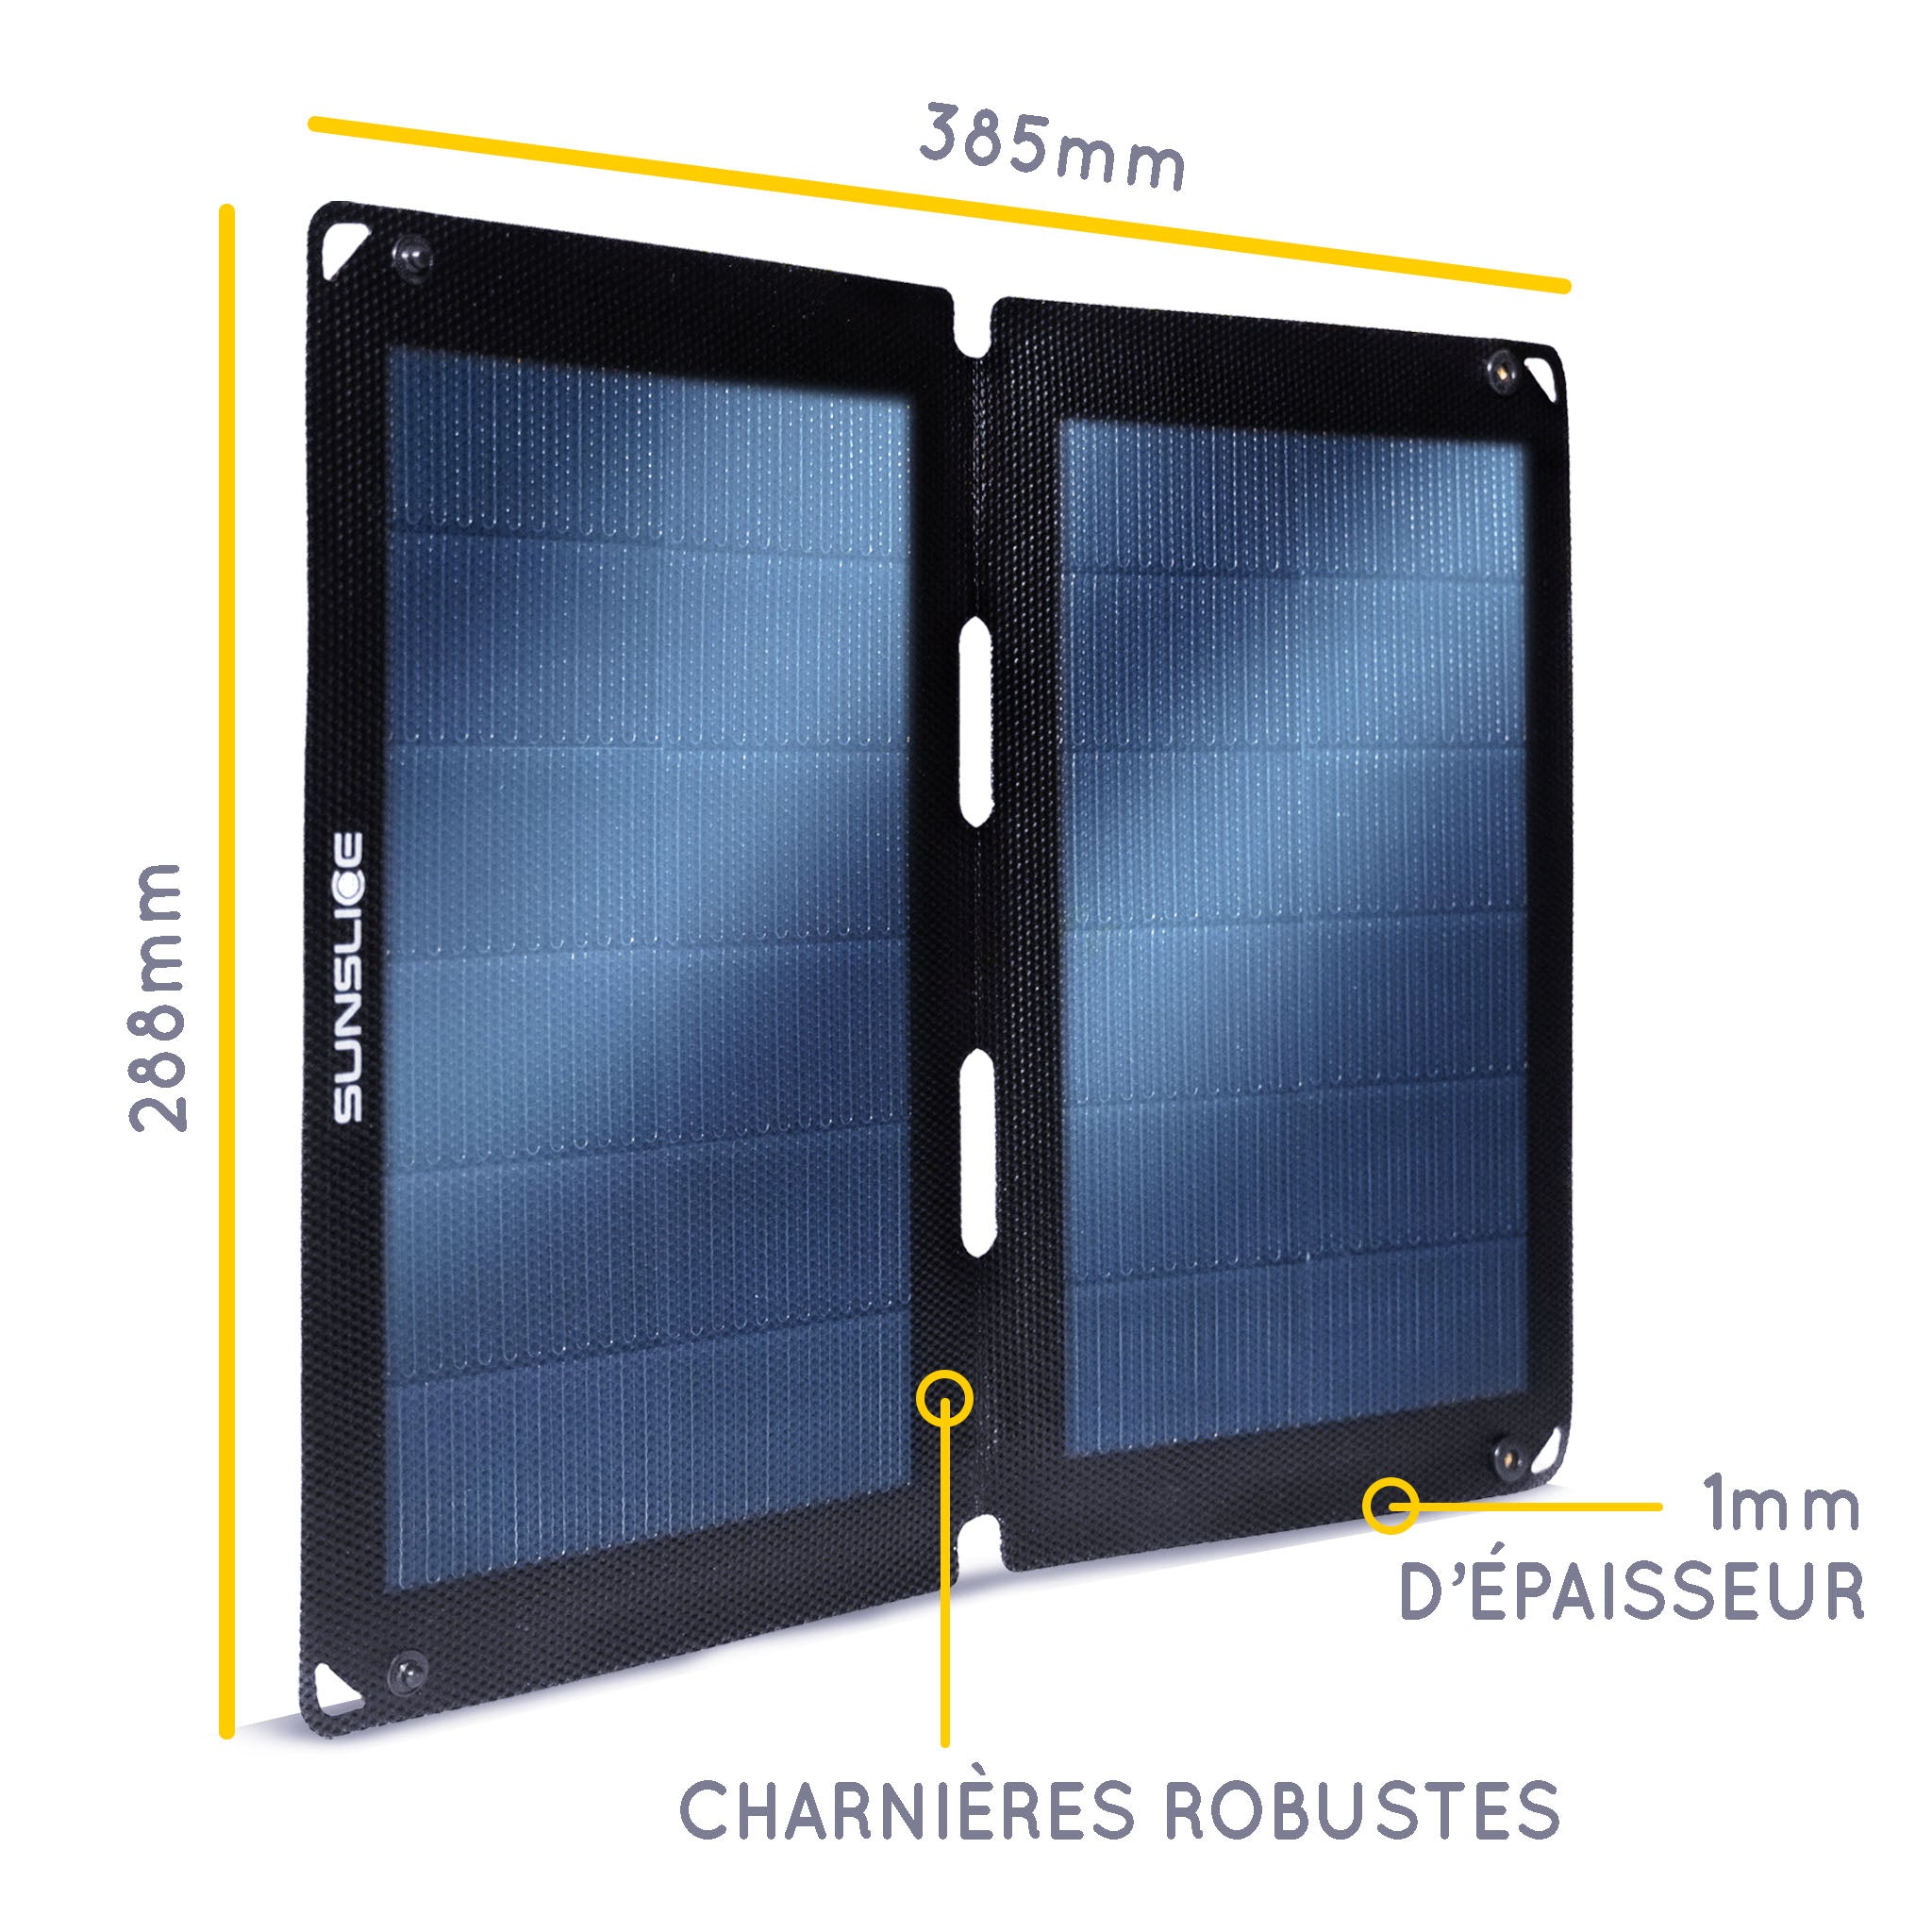 Informations sur le panneau solaire. Taille : 385mm, 288 mm, épaisseur 1mm. Charnières robustes